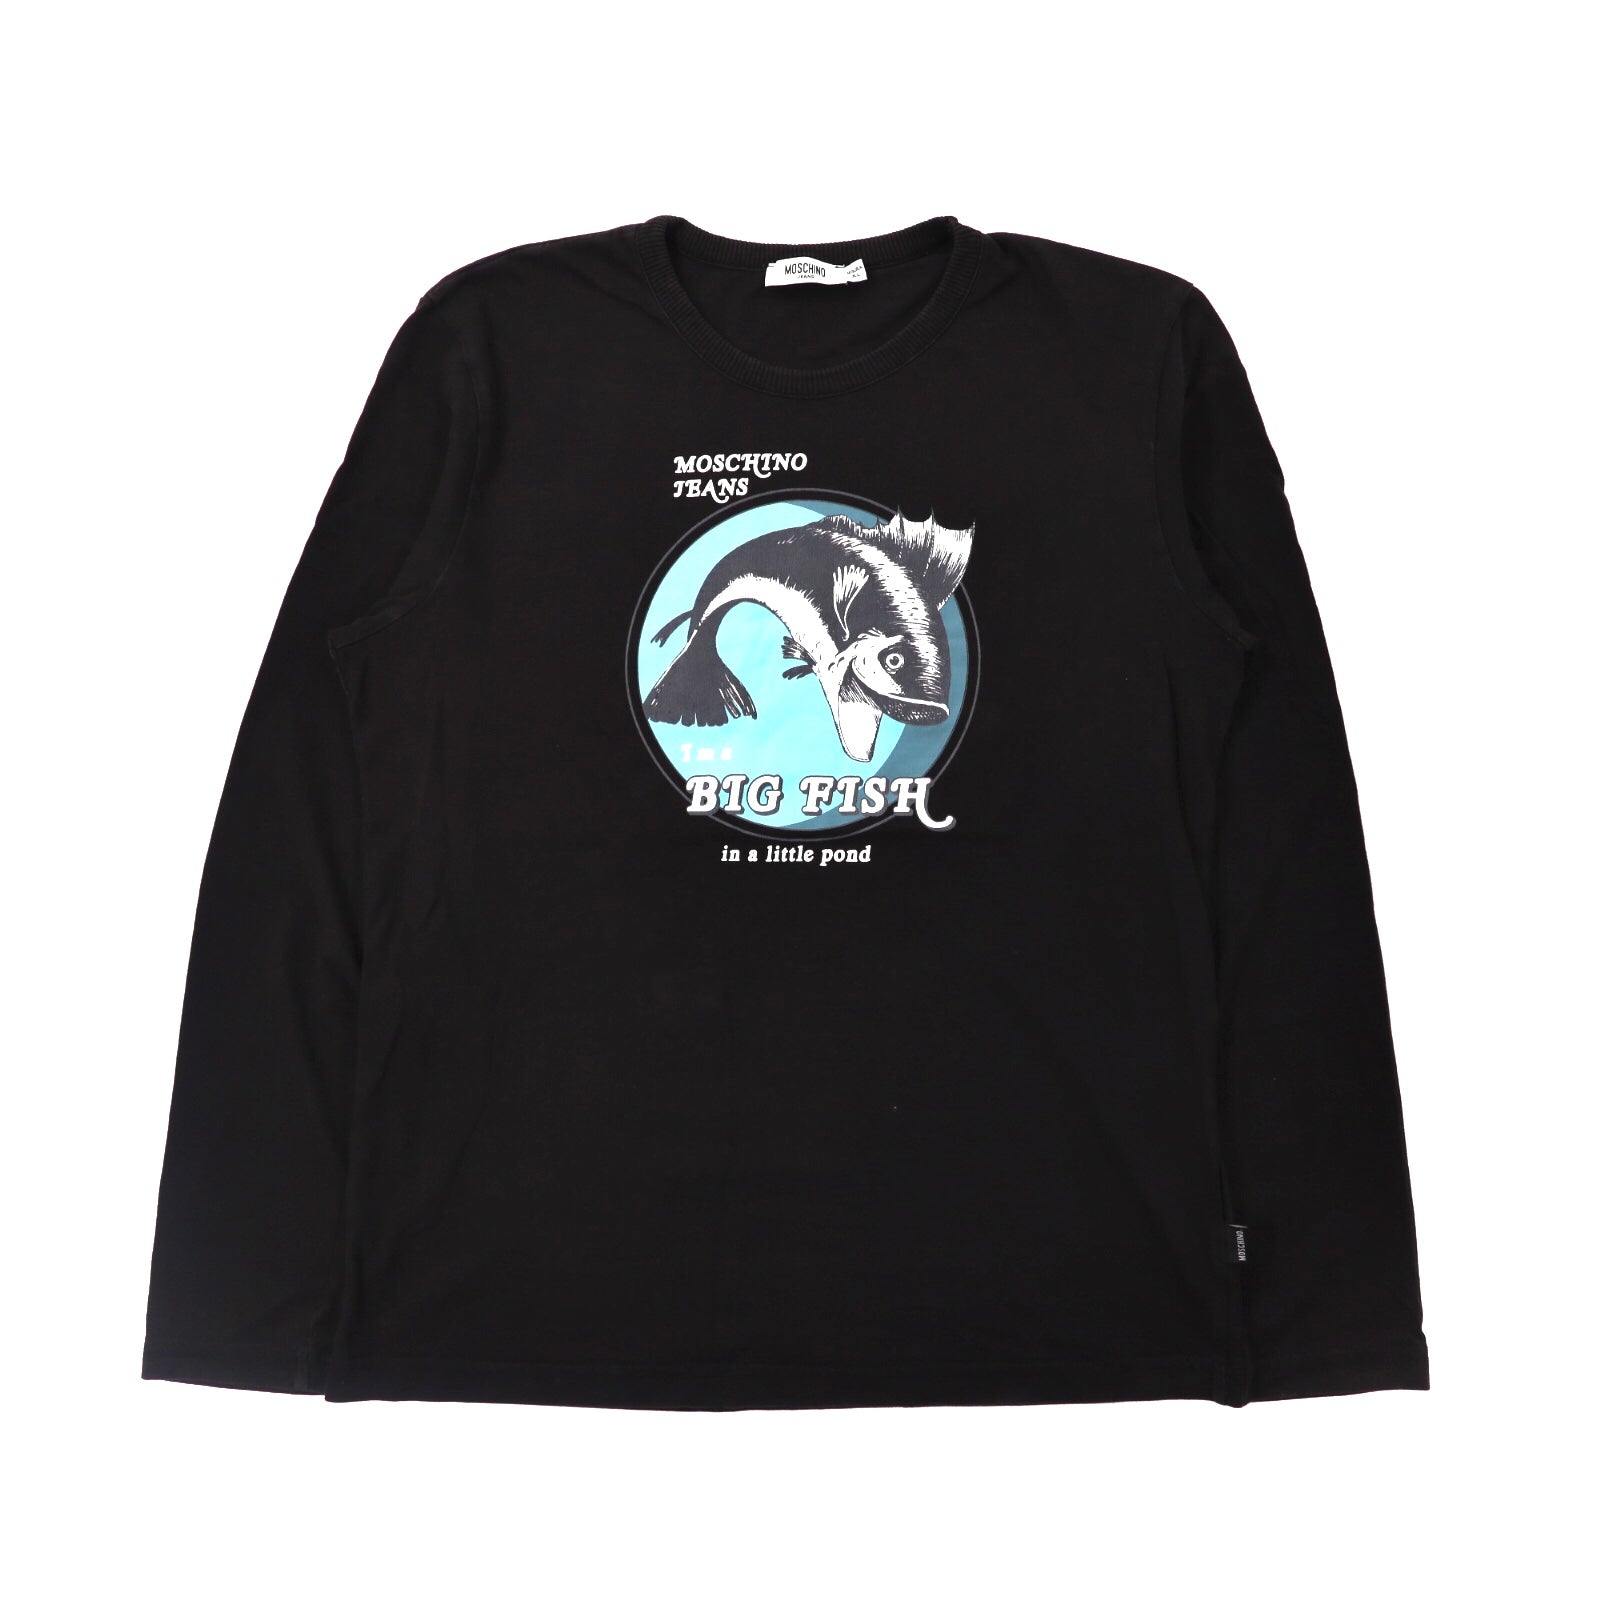 Moschino Jeans Long Sleeve T -shirt XL Black Big Fish Print 90s